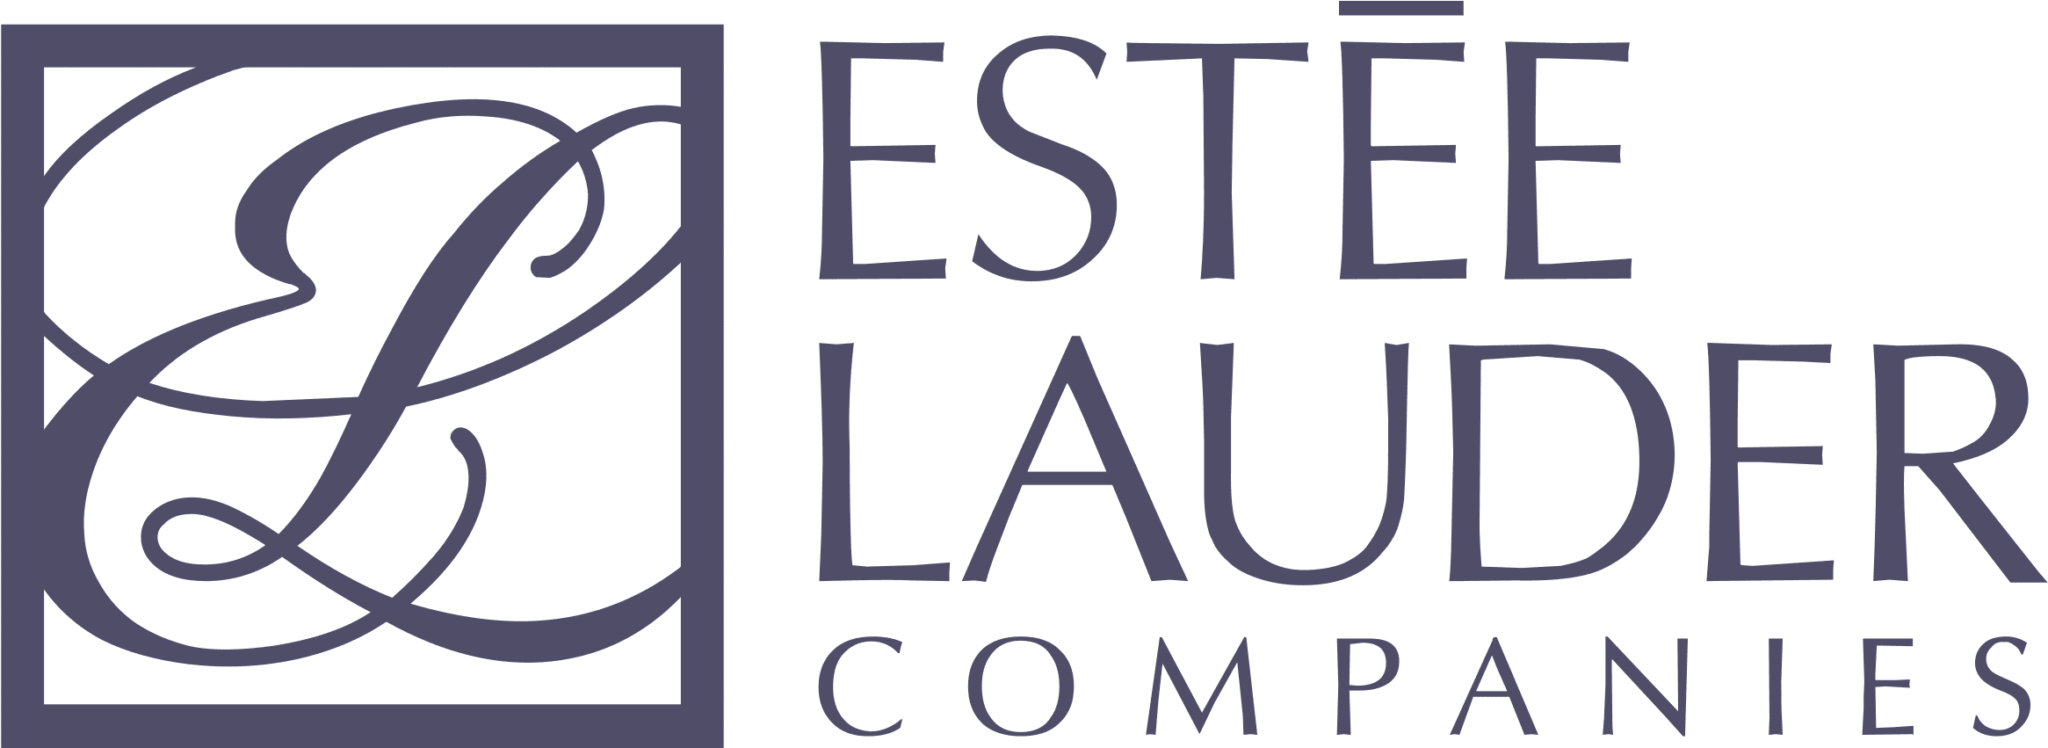 Estee-Lauder-logo